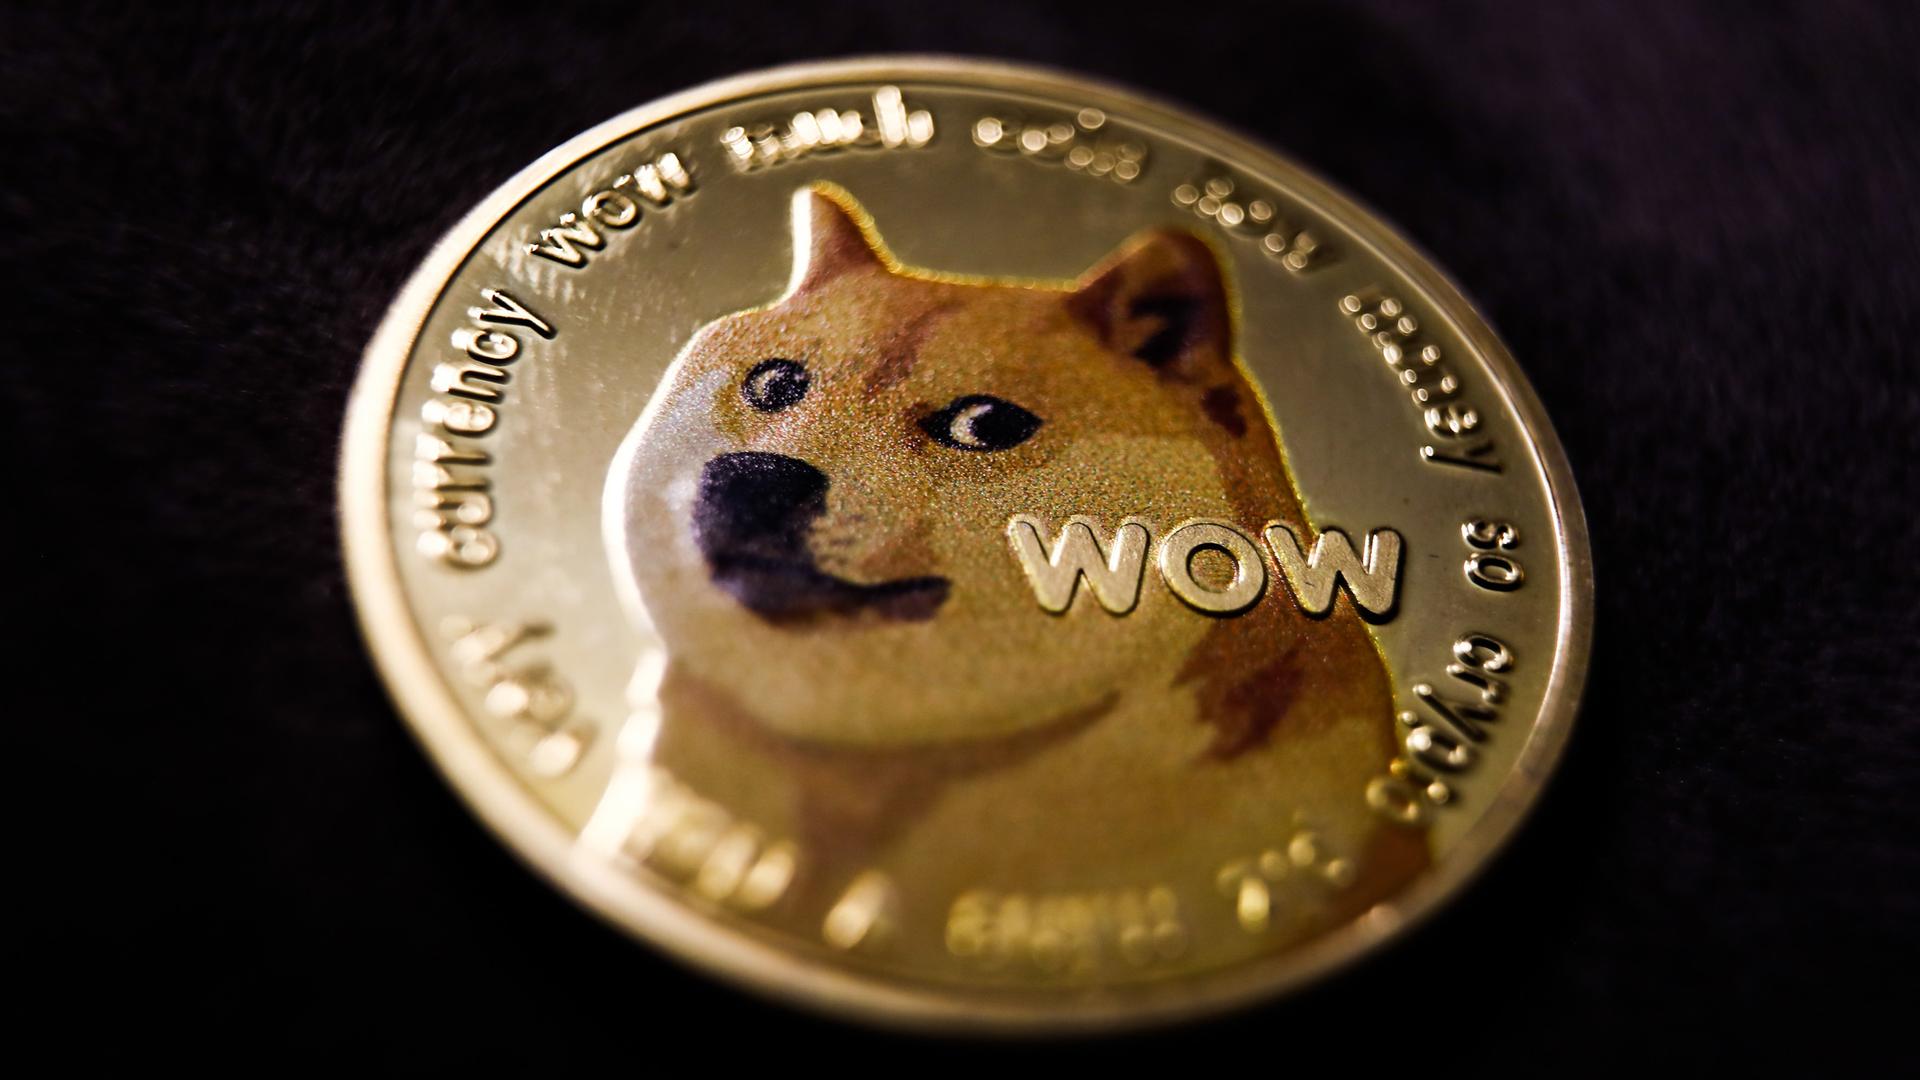 Auf einer Goldmünze ist der Kopf eines japanischen Shiba-Hundes mit der Aufschrift "Wow" zu sehen.